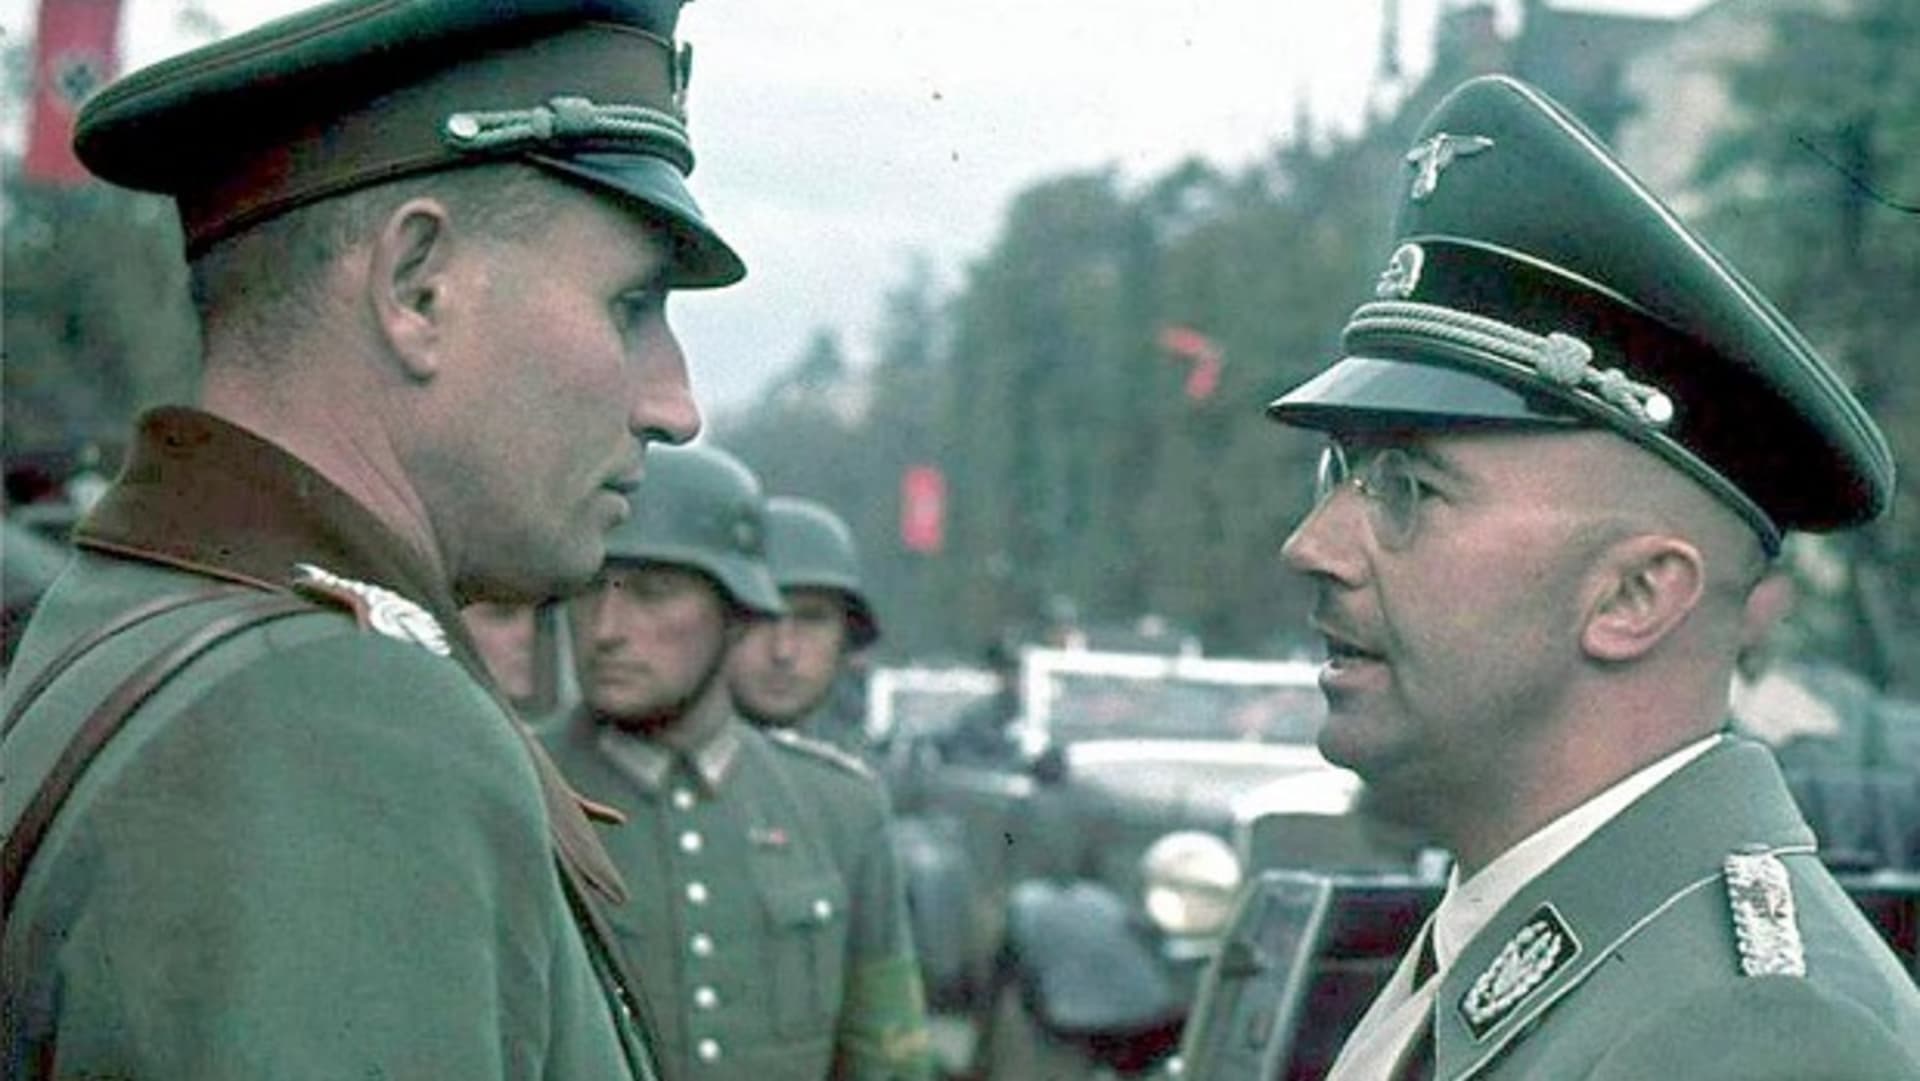 Heinrich Himmler se snažil nahradit křesťanství v Německu novým typem mysticismu